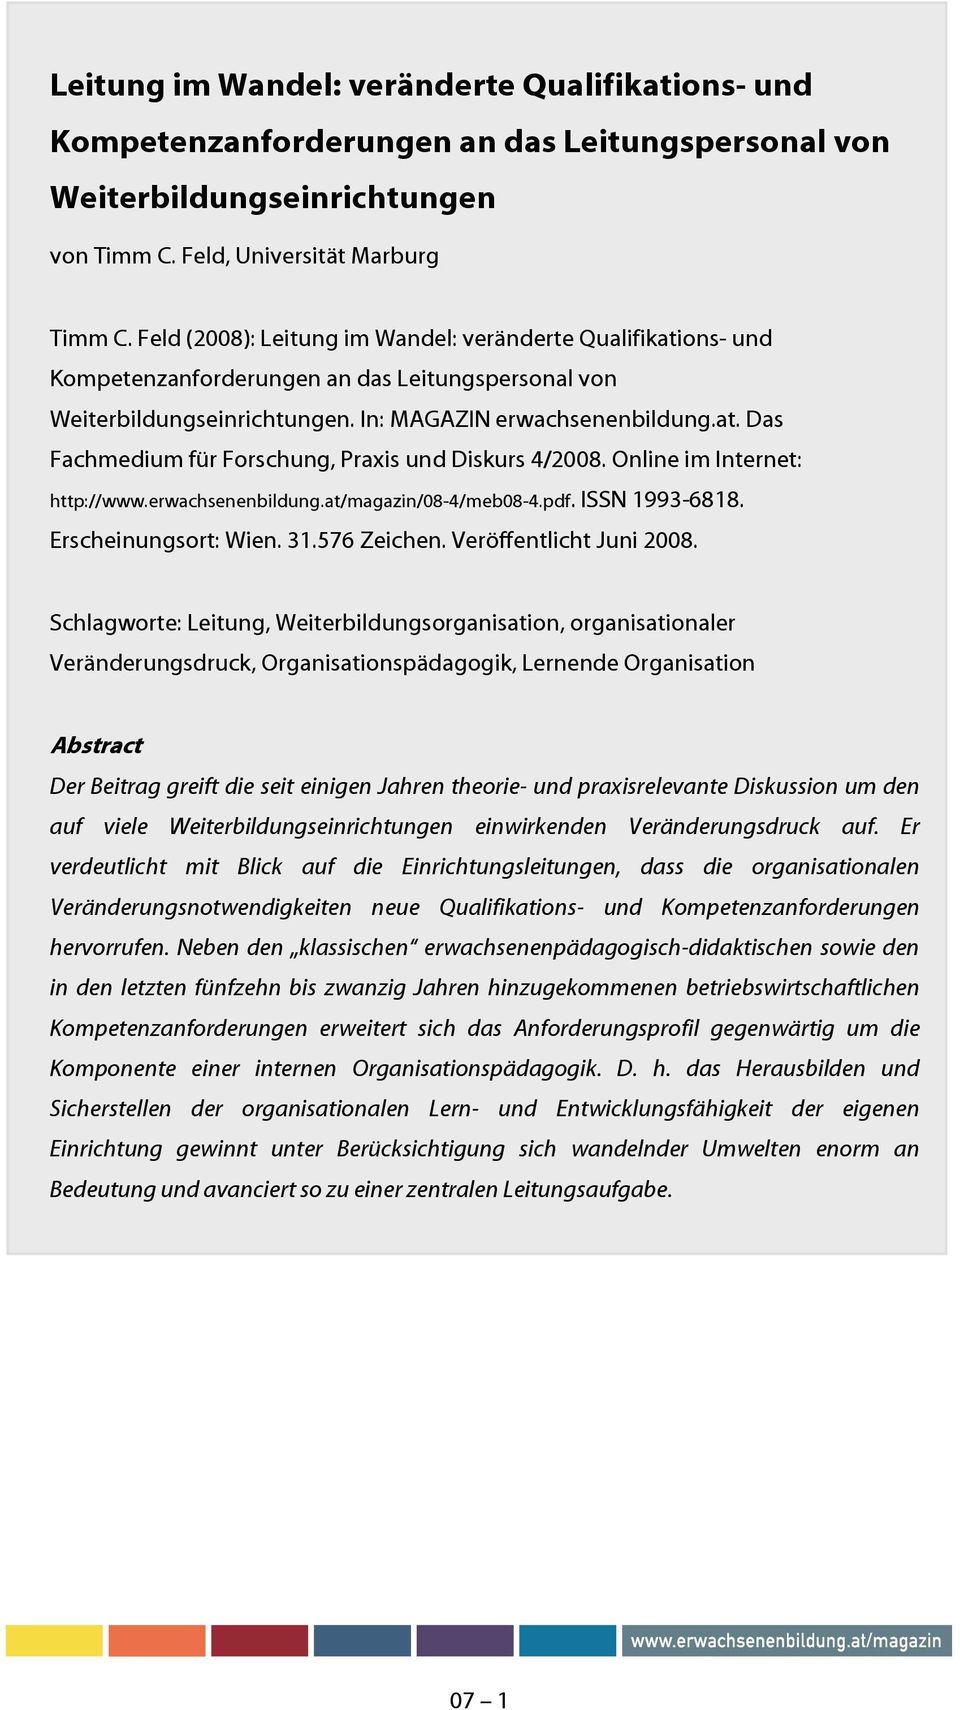 Online im Internet: http://www.erwachsenenbildung.at/magazin/08-4/meb08-4.pdf. ISSN 1993-6818. Erscheinungsort: Wien. 31.576 Zeichen. Veröffentlicht Juni 2008.